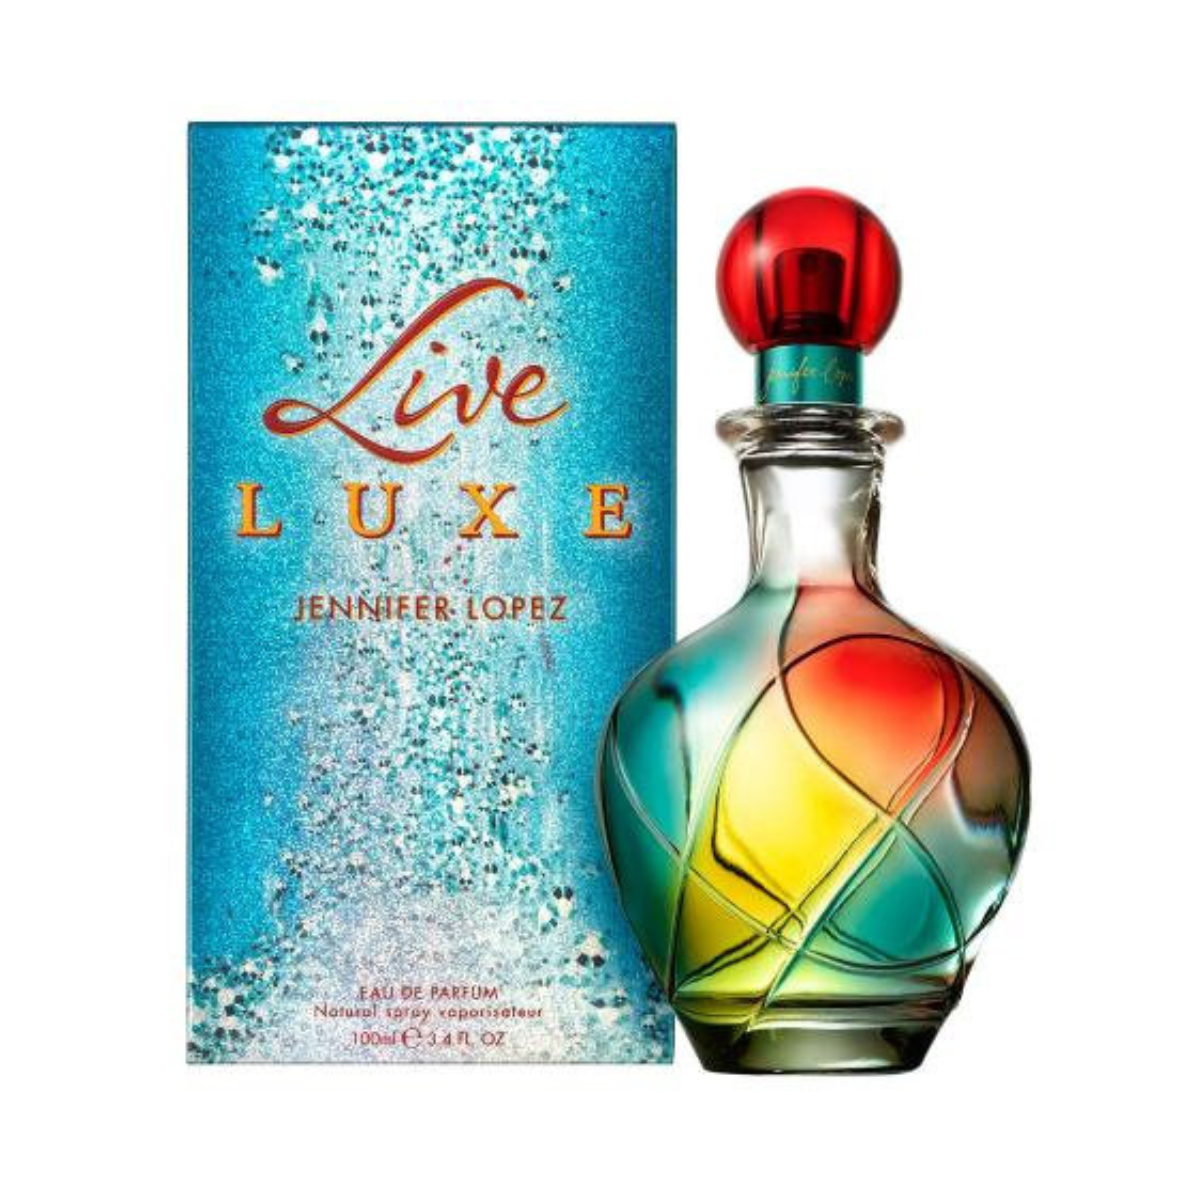 Live Luxe Eau De Parfum